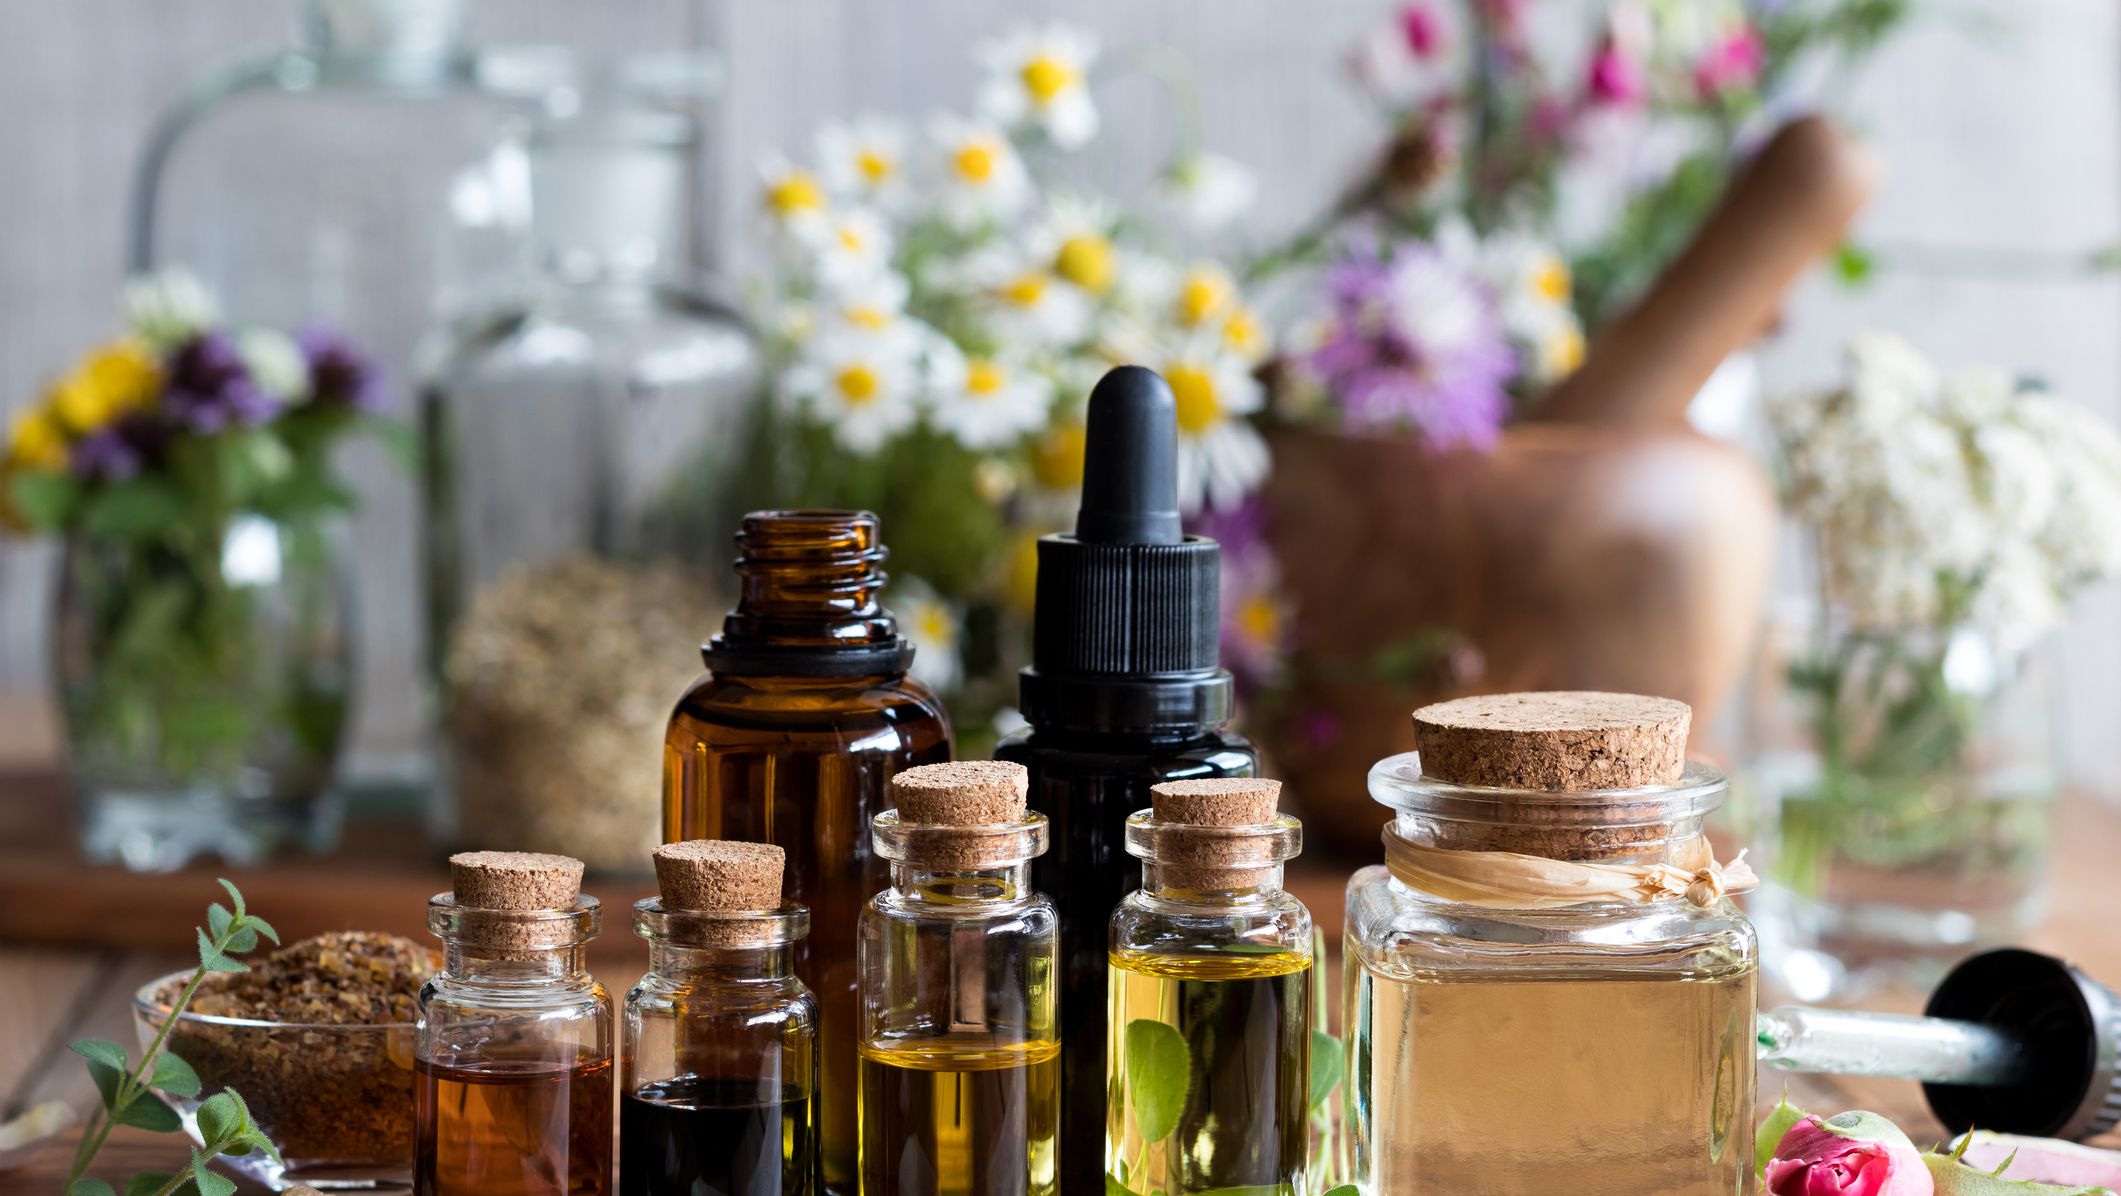 Aromatic essential oils